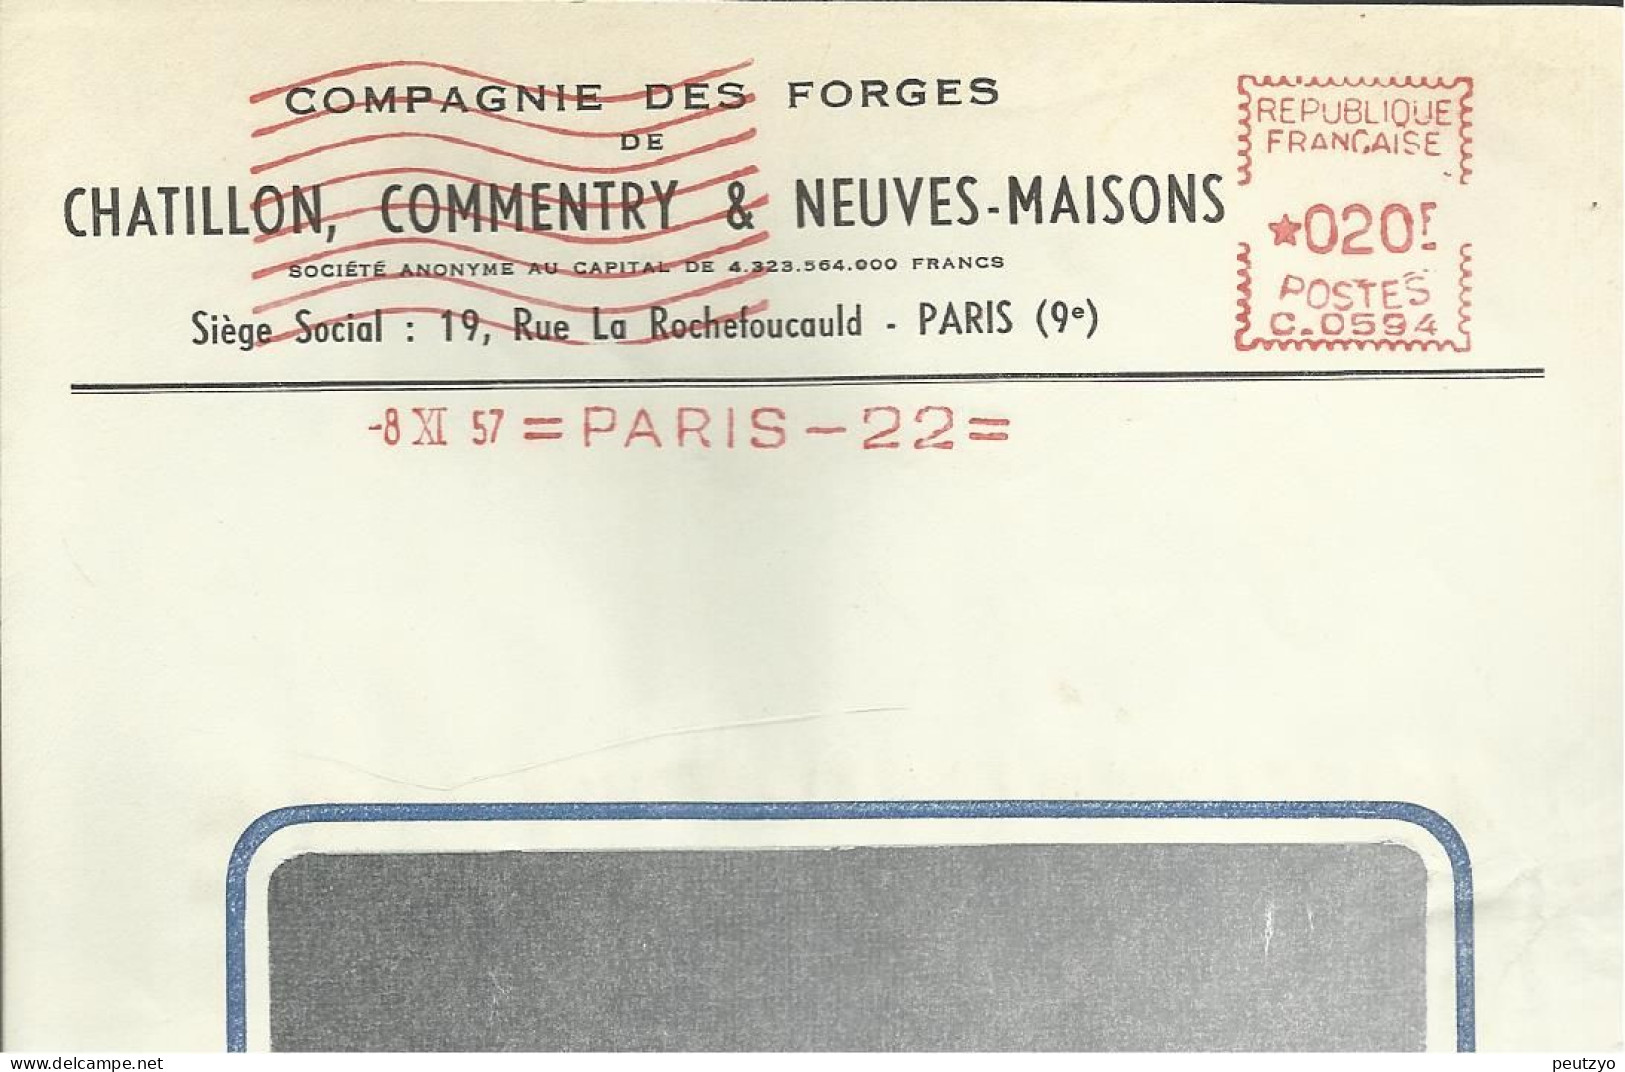 Lettre  EMA  Havas C 1957 Compagnie Des Forges  Chatillon ,commentry & Neuves Maisons 54 Usines Metier 75 Paris   A20/19 - Usines & Industries